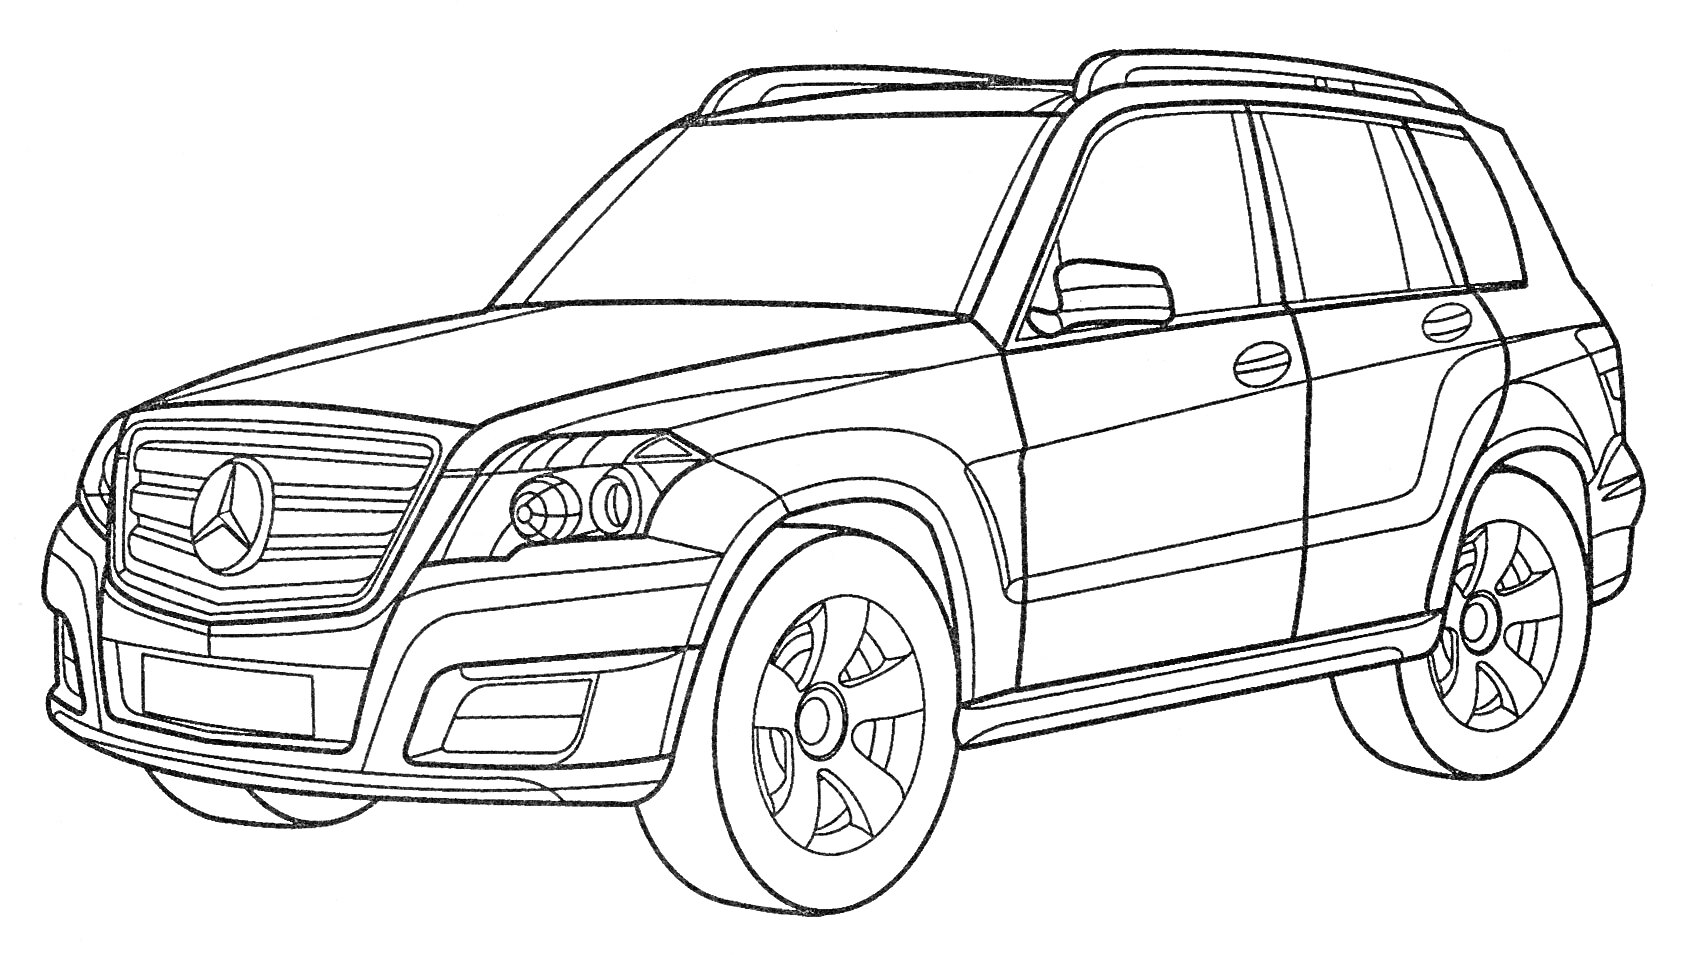 Линия рисунка автомобиля Мерседес GLK с четырьмя дверями и дисками